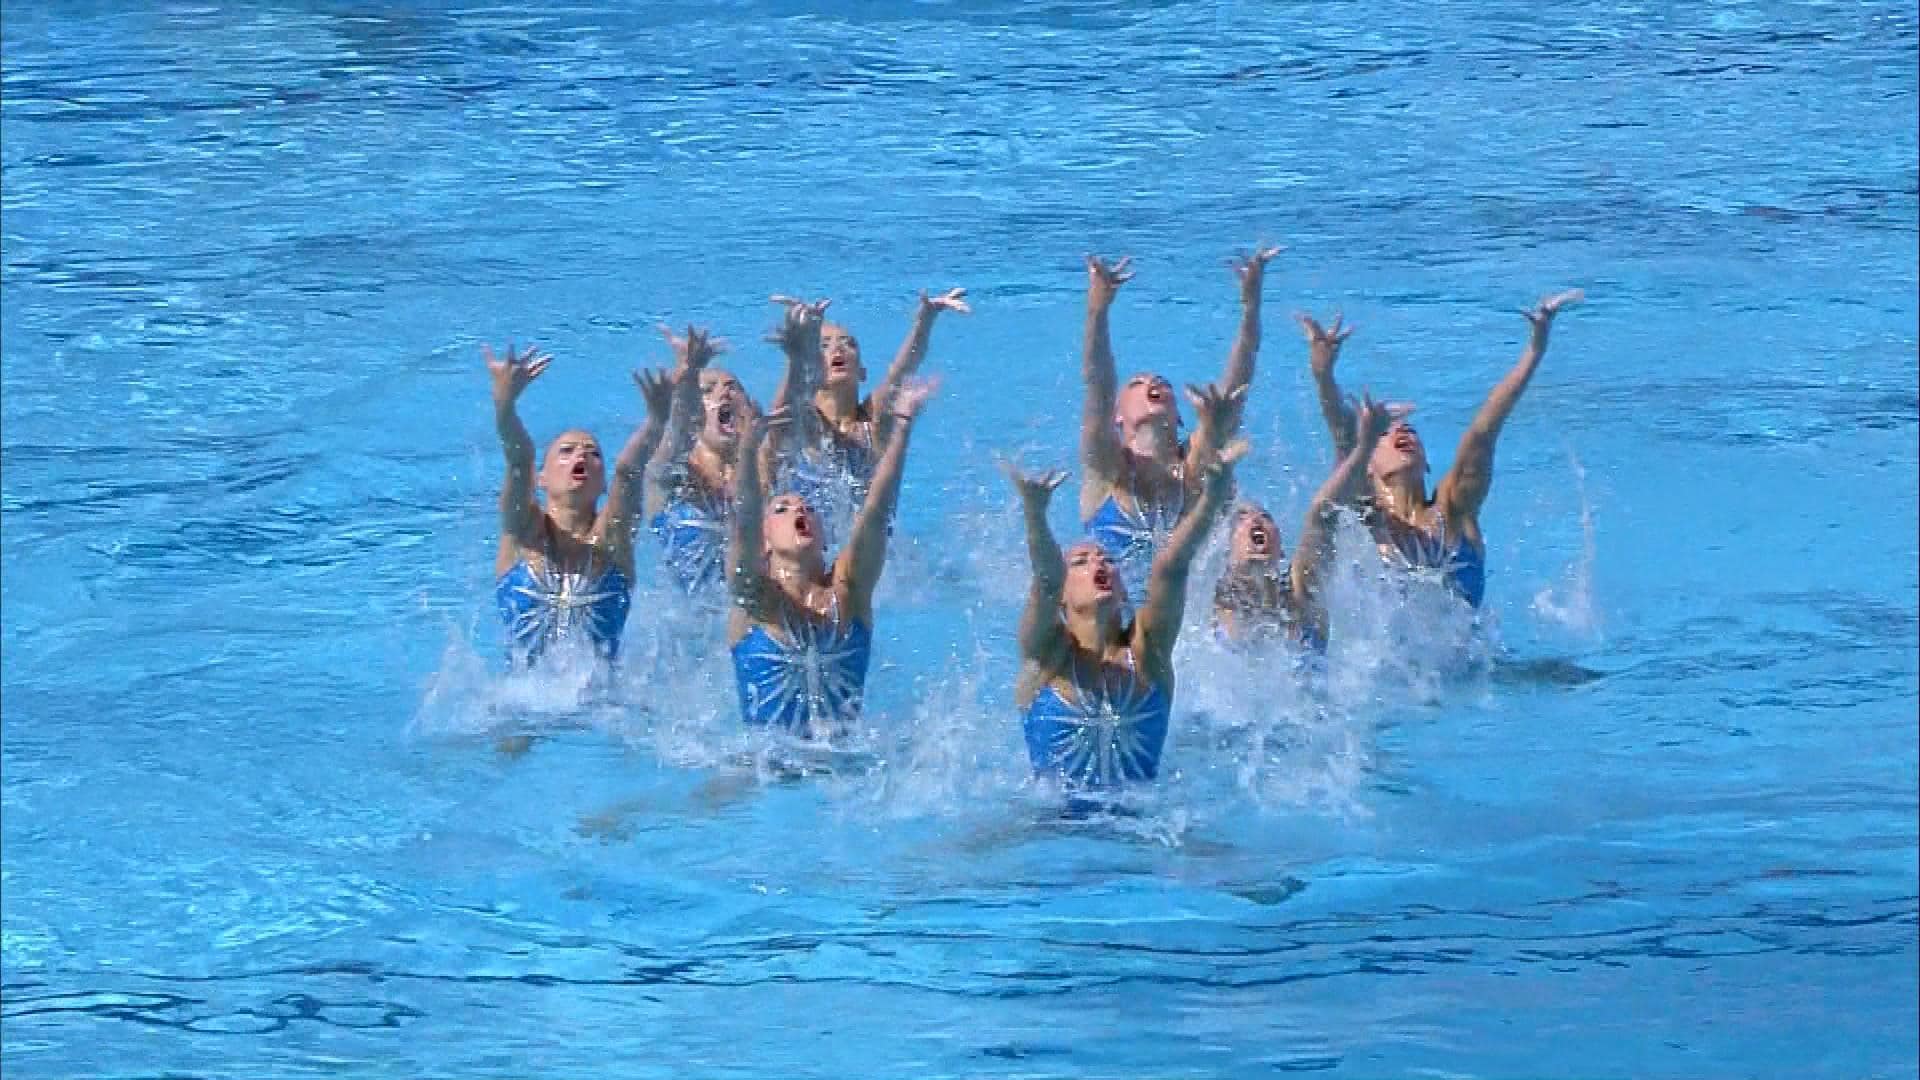 Egypt performs 'Lion King' synchronized swimming routine | NBC Olympics